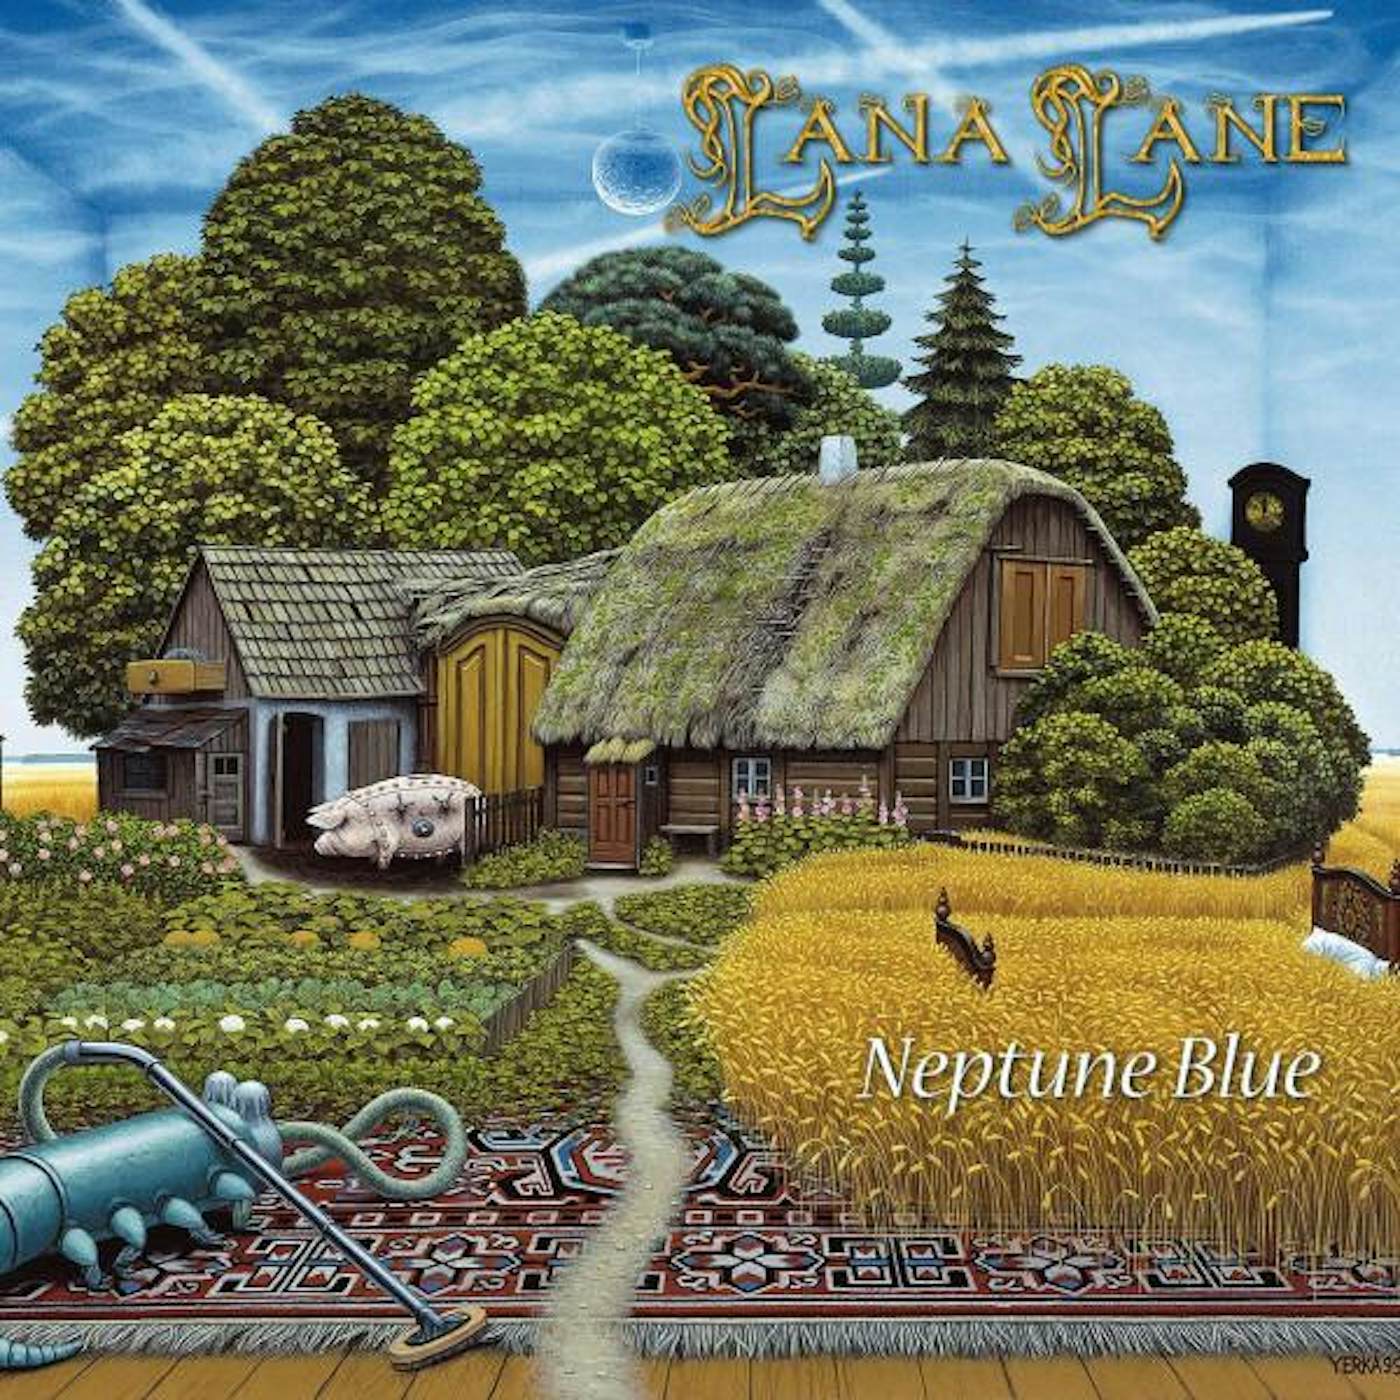 Lana Lane NEPTUNE BLUE CD